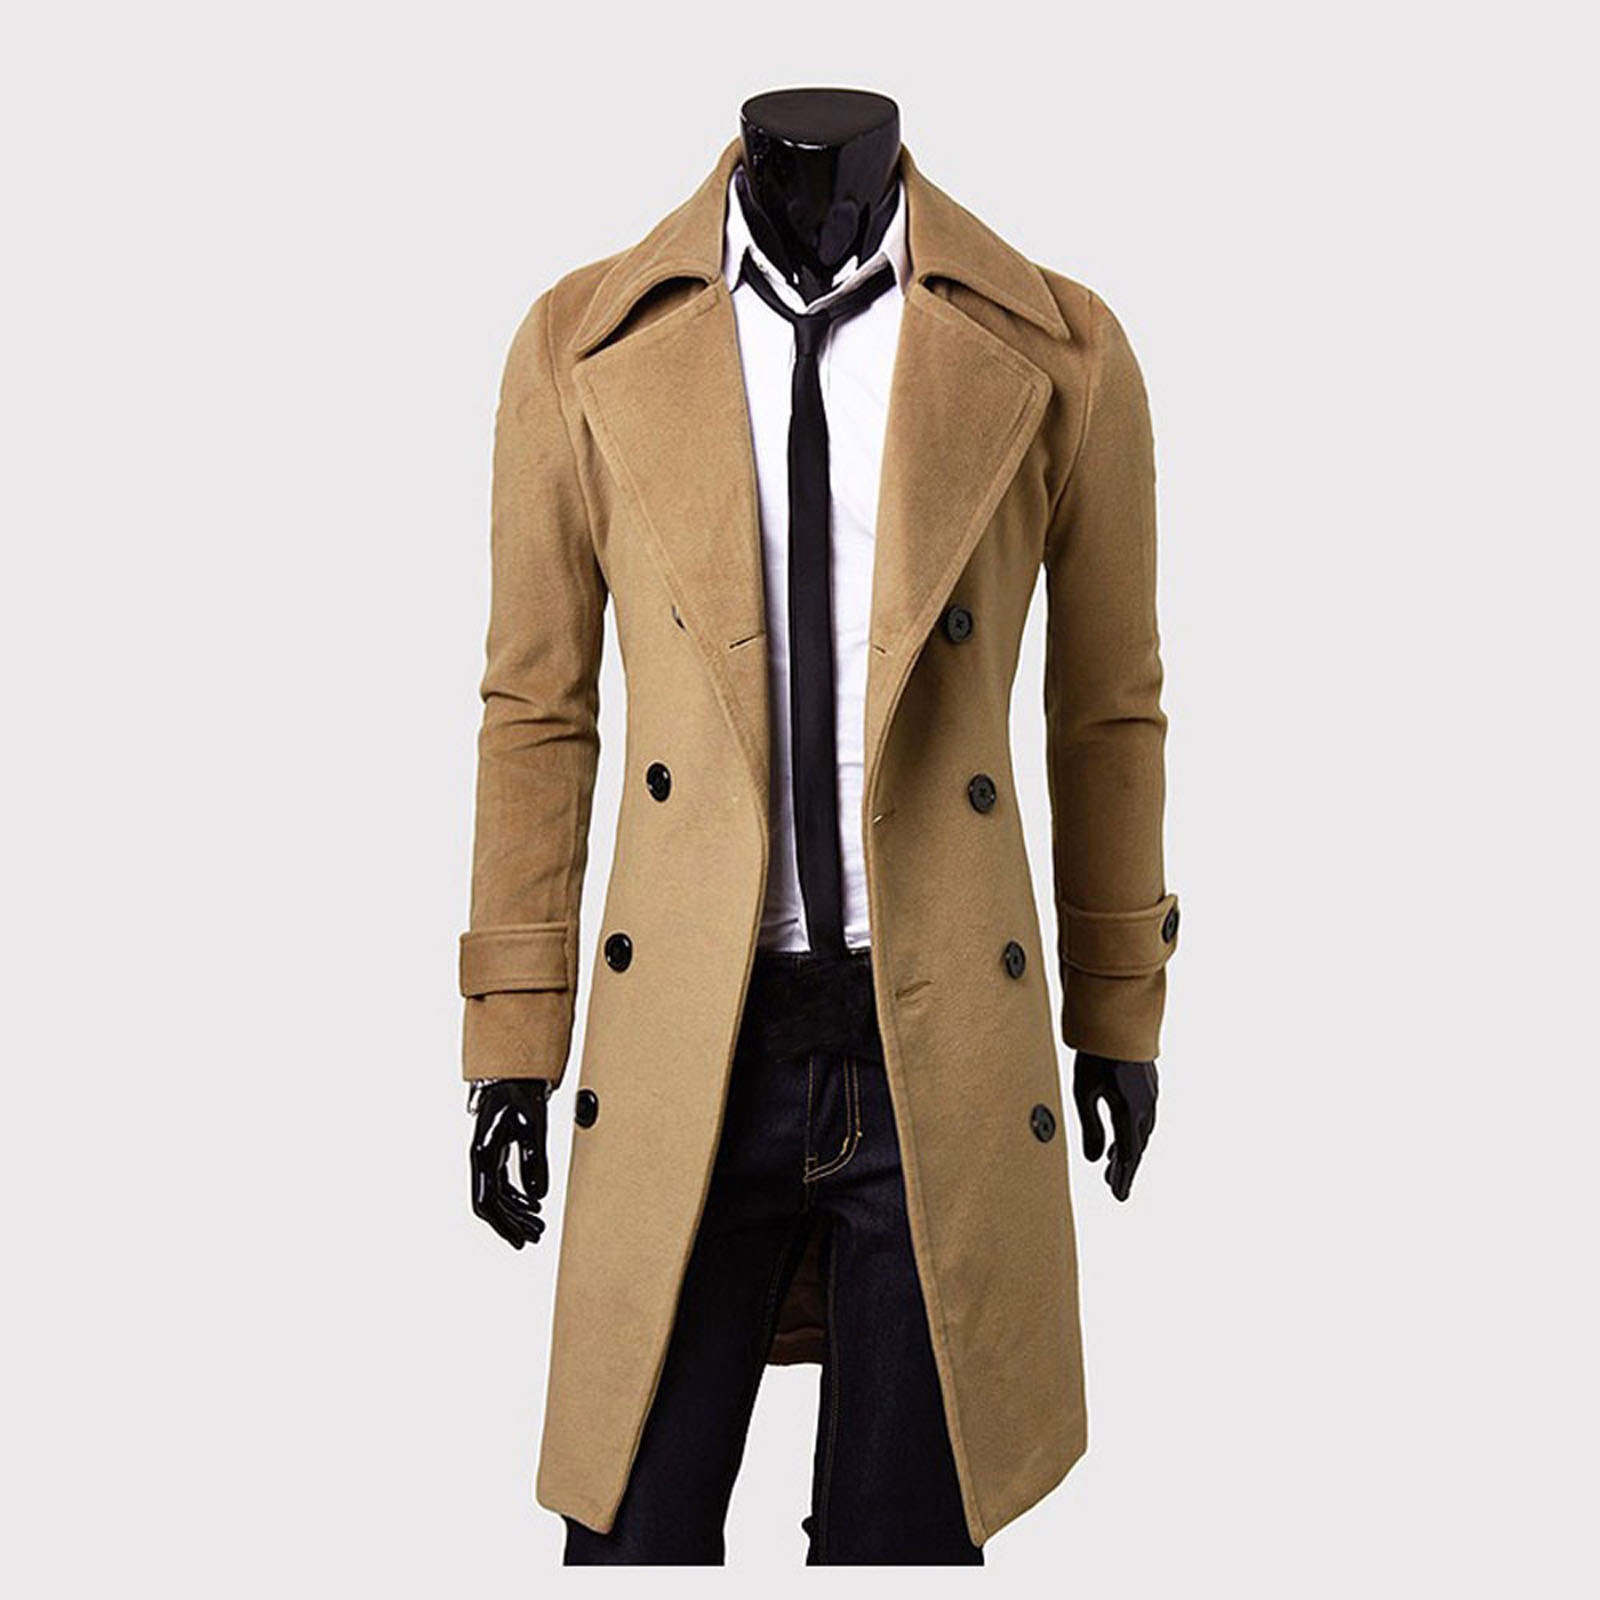 Winter Men Slim Stylish Trench Coat Double Breasted Long Jacket Parka Casual long men's woolen fleece warm windbreaker jacket